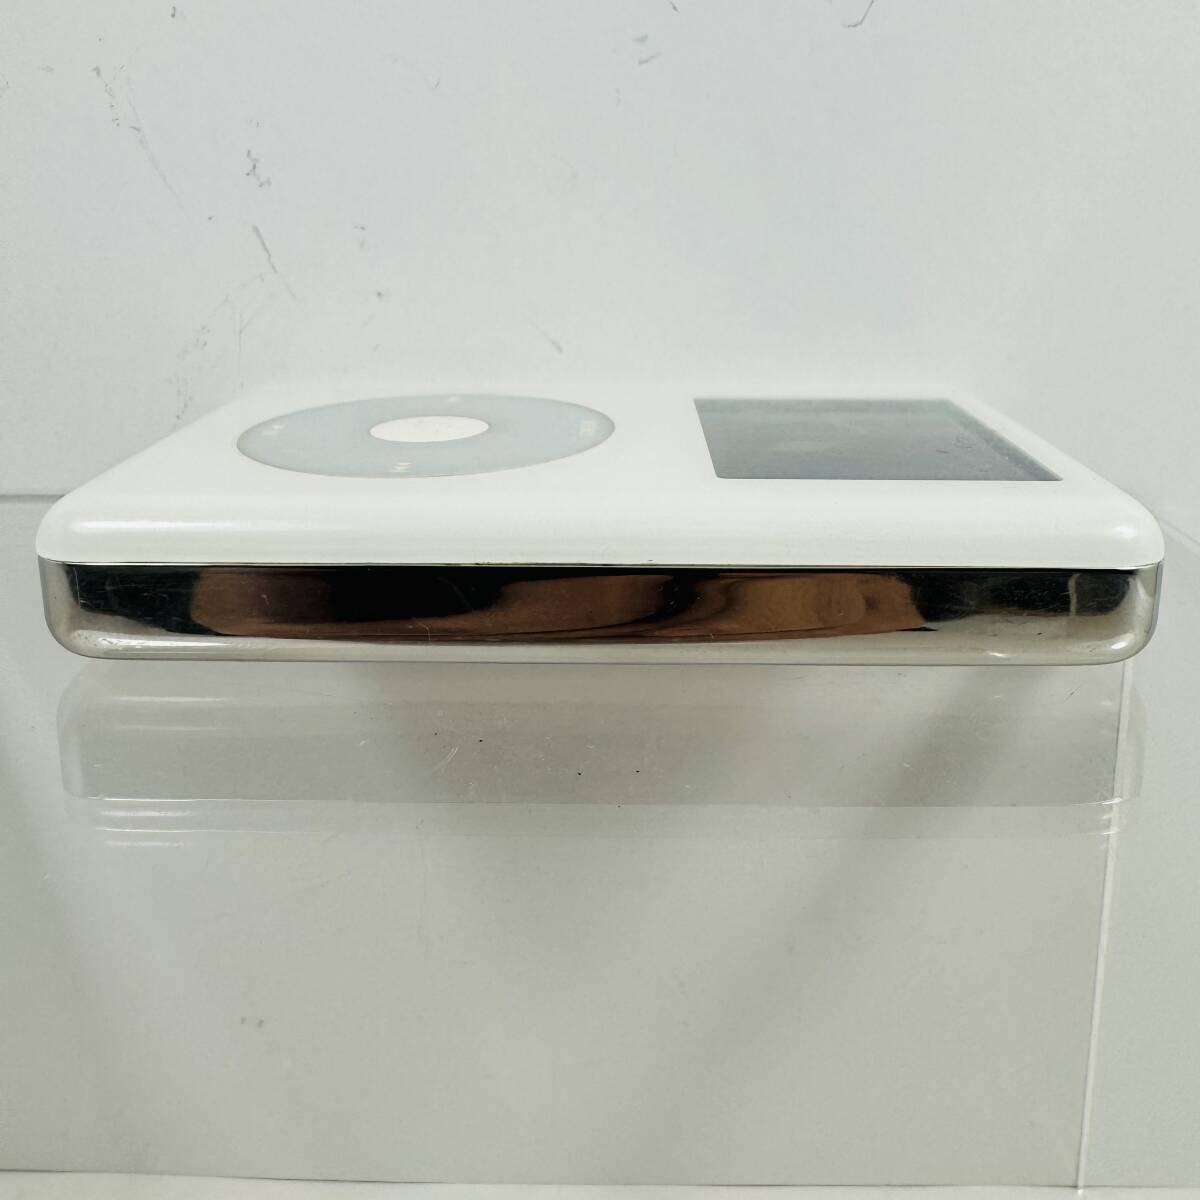 ★ジャンク品 2005年 Apple iPod photo 30GB A1099 第4世代 M9829J/A アイポッド クリックホイール Dockコネクタの画像5